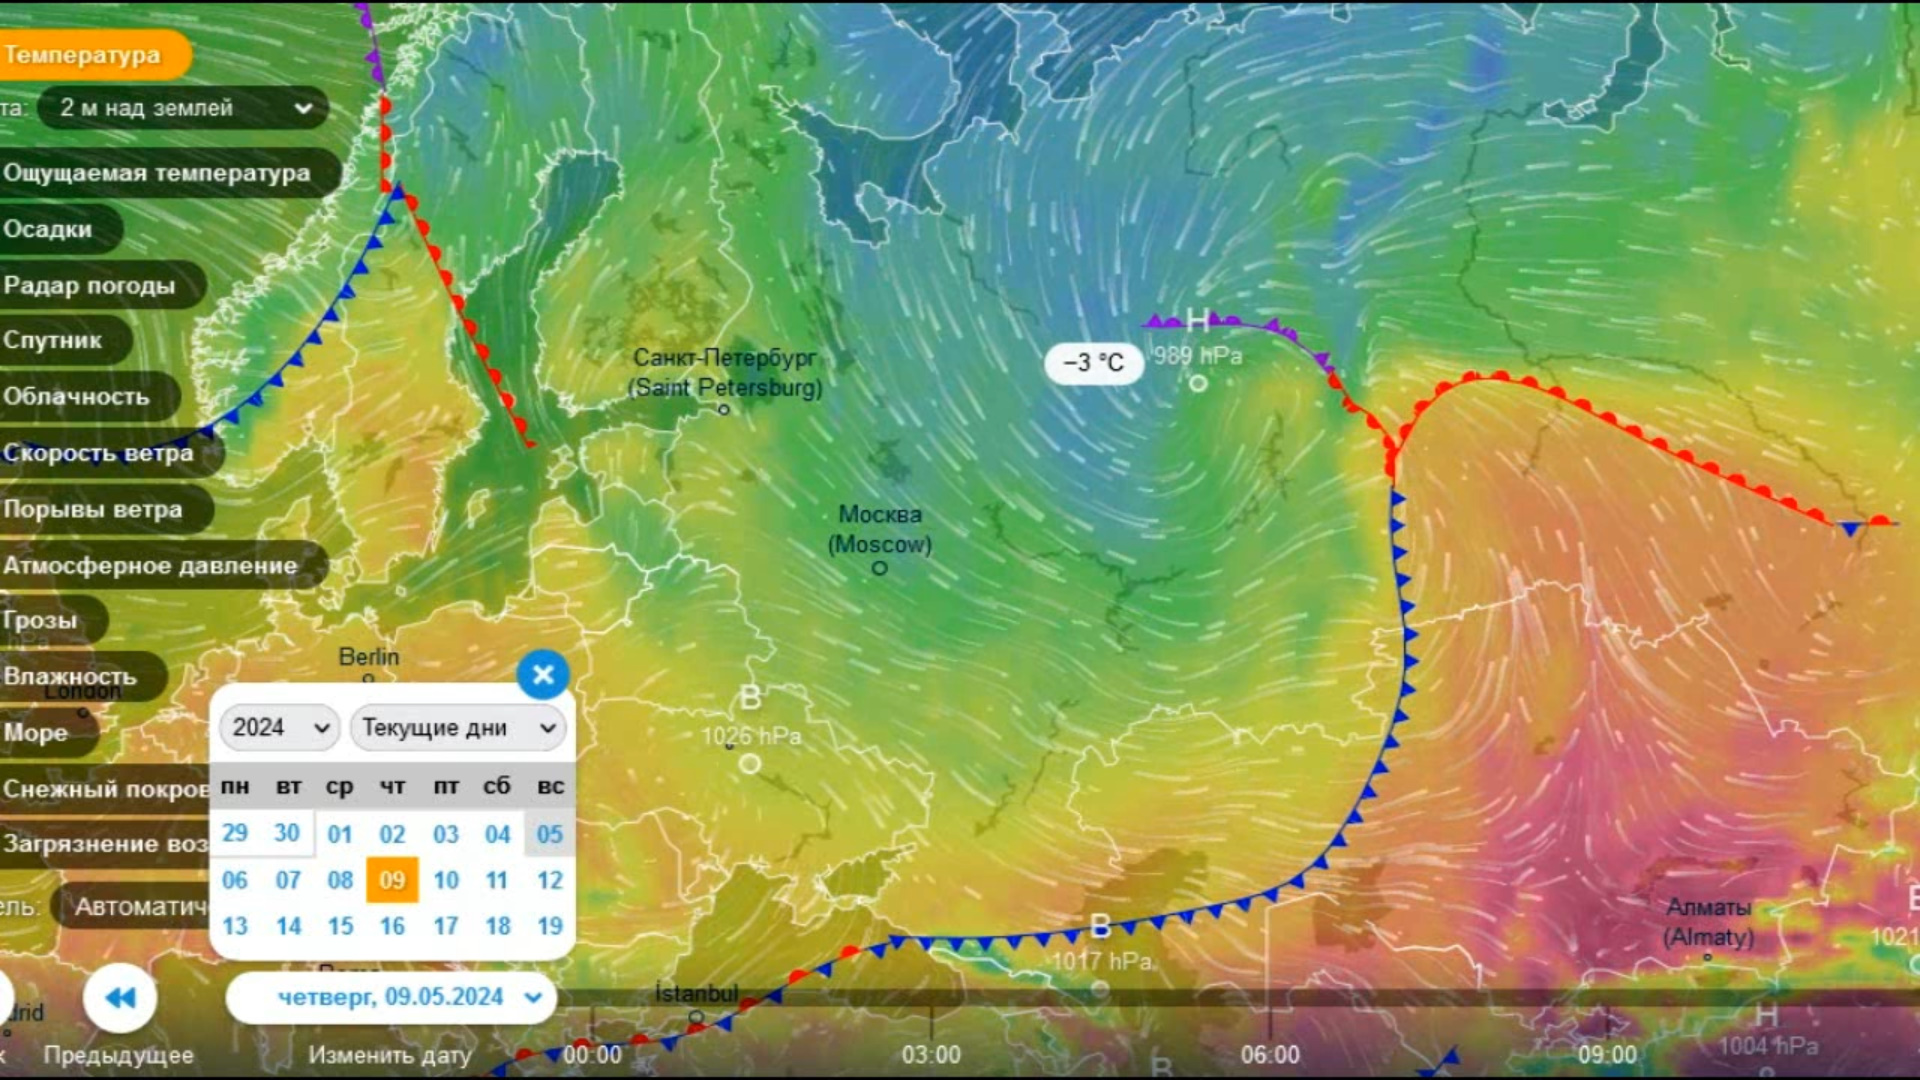 9 мая на значительной территории ЕТР будет преобладать аномально-холодная погода. Прогноз погоды